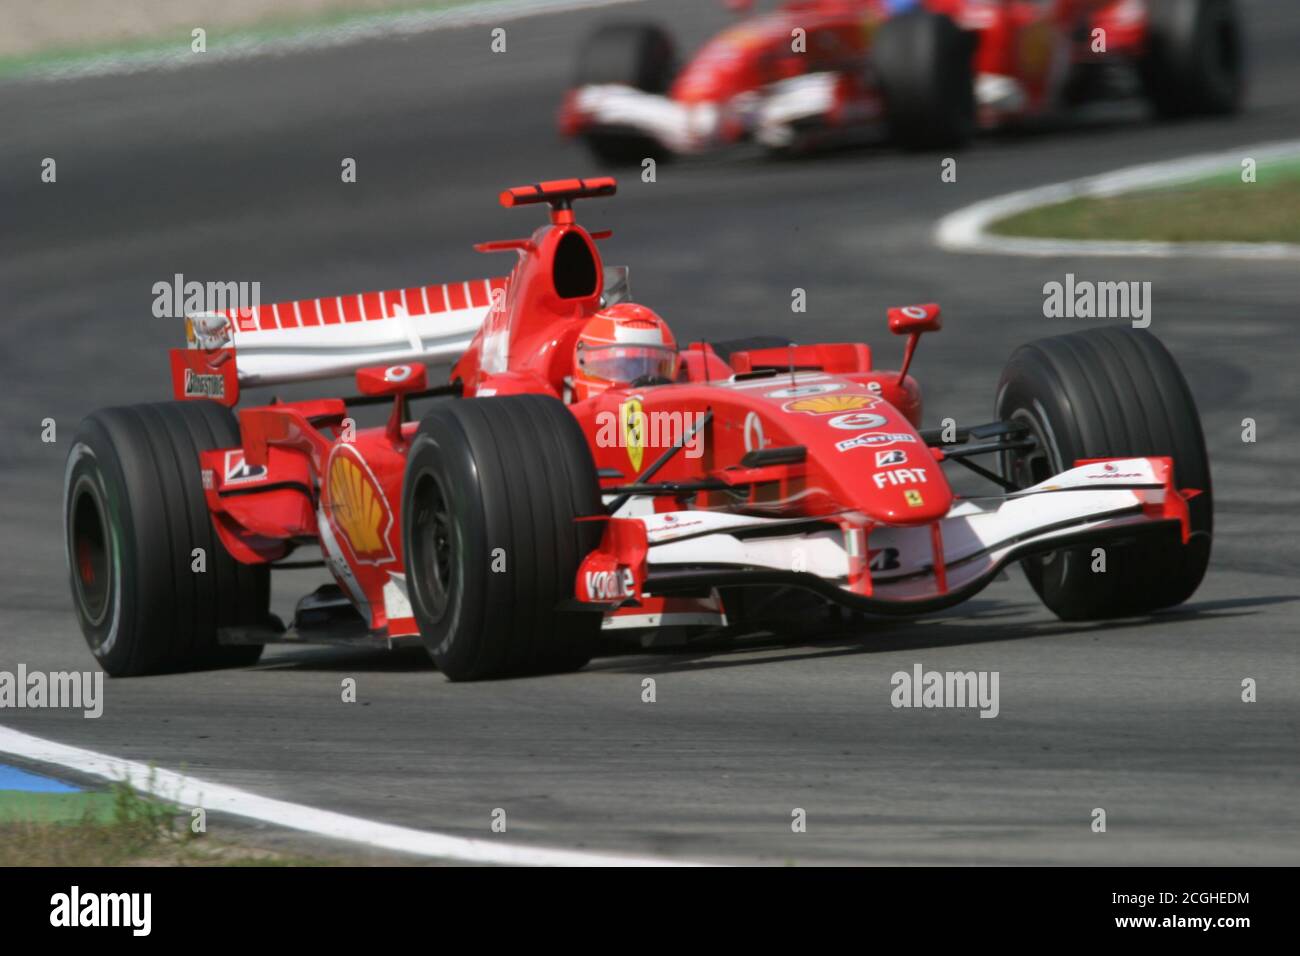 Michael Schumacher, GER, Scuderia Ferrari, F1, Gran Premio de Alemania 2006 Foto de stock